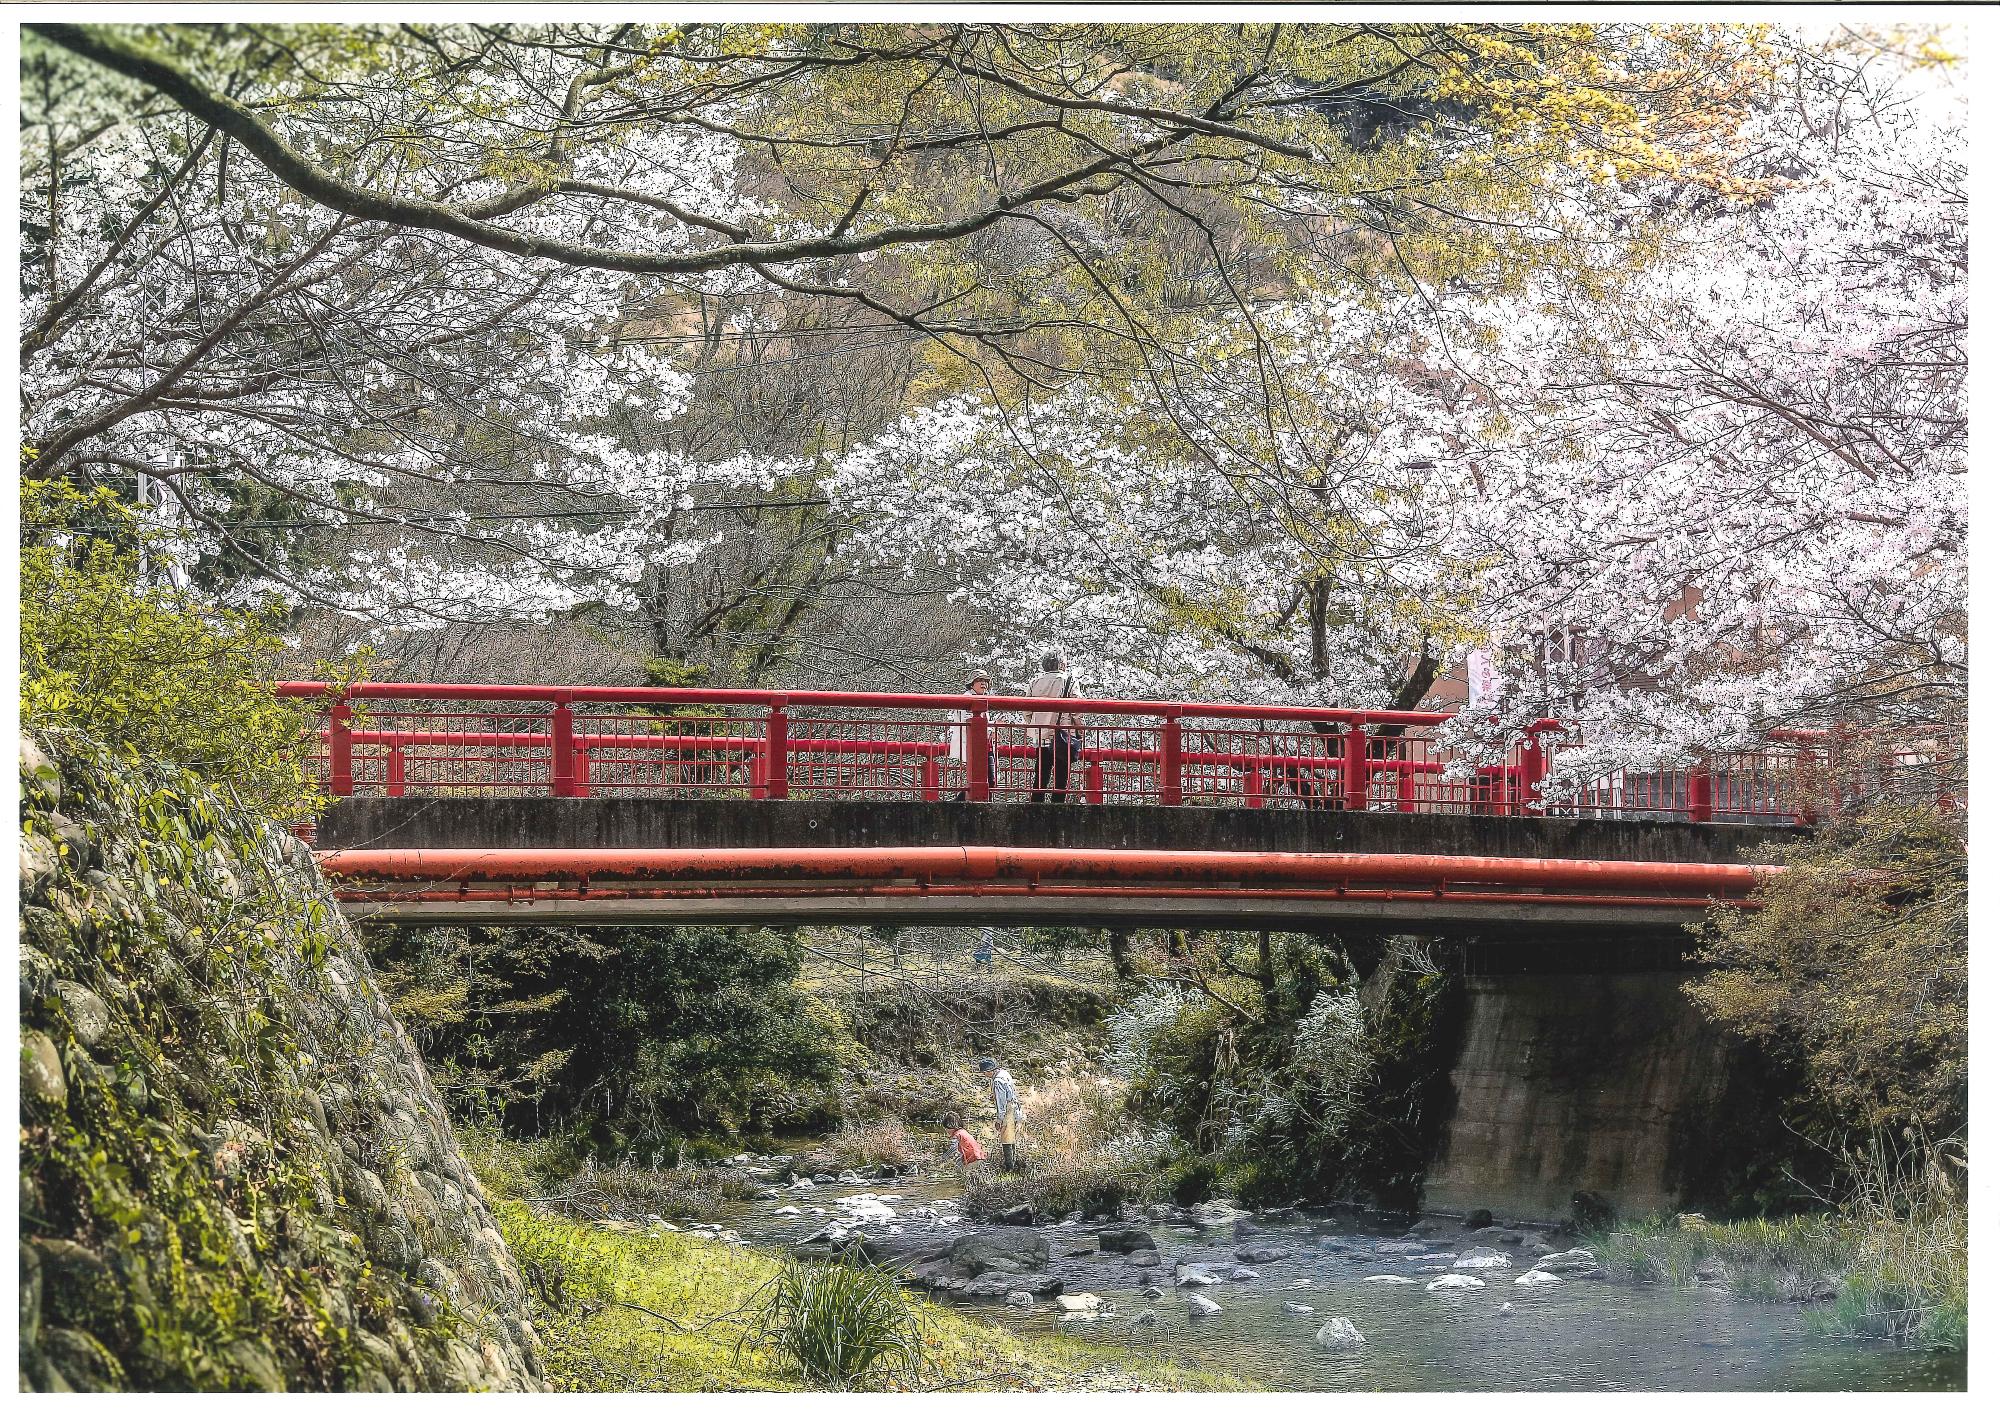 赤い欄干の橋が架かった川のそばに満開の桜が咲いている写真